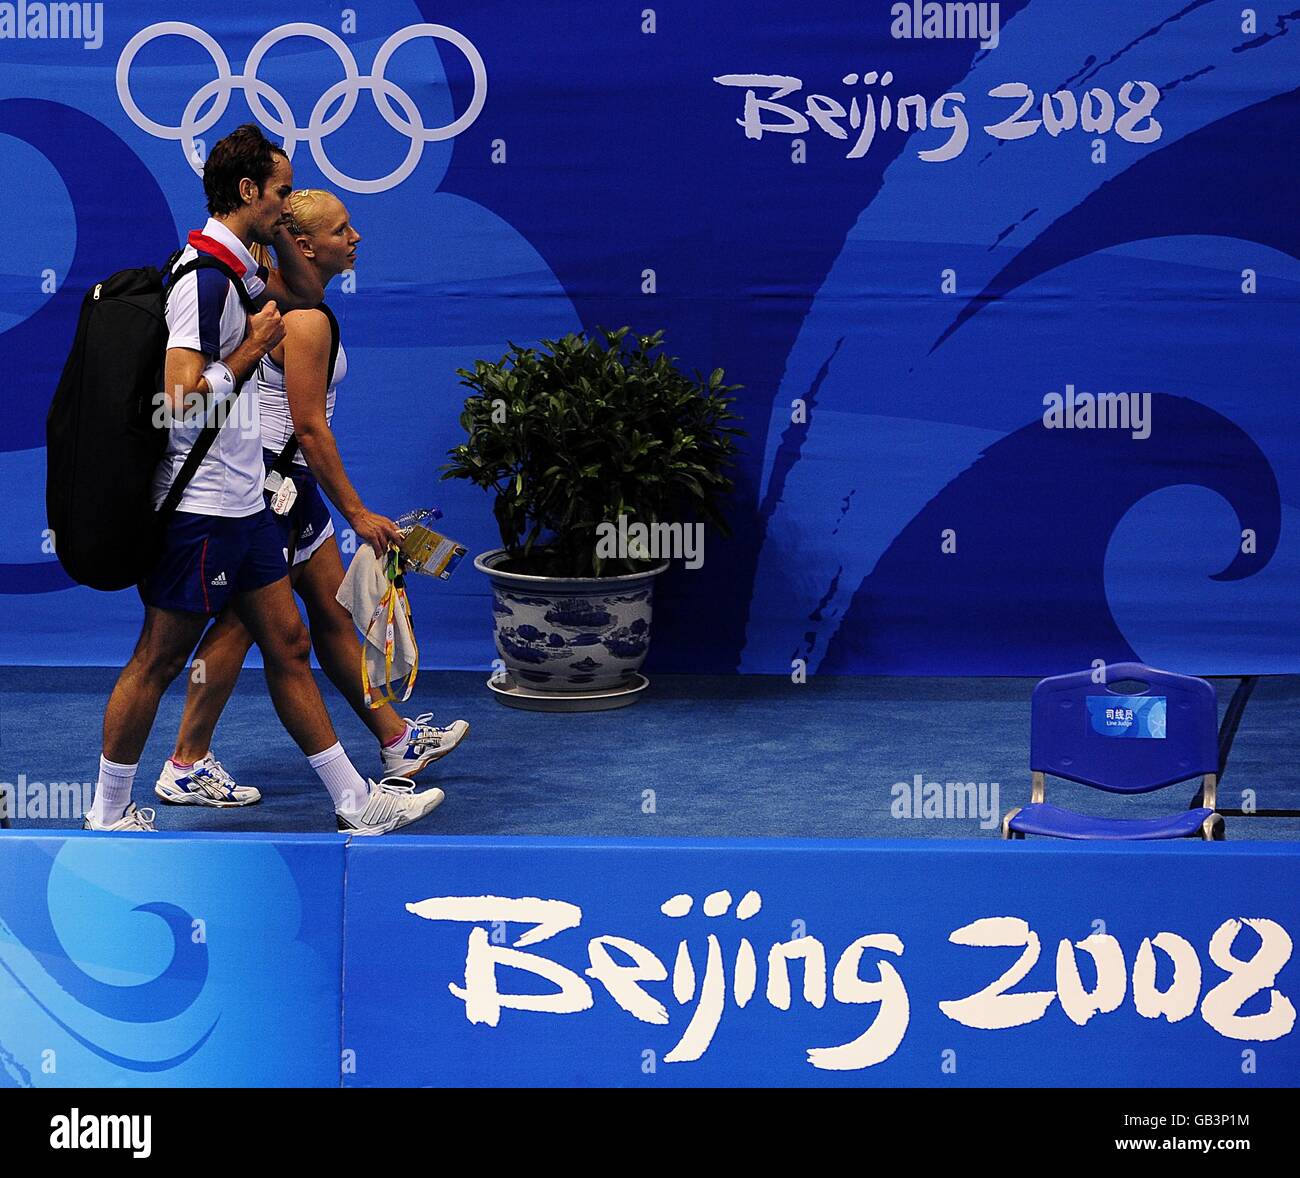 Il deluso duo di badminton britannico Gail EMM (a destra) e Nathan Robertson (a sinistra) si allontanano dalla corte dopo essere stati picchiati 2-0 durante le doppie finali miste di badminton presso la palestra dell'Università di tecnologia di Pechino durante i Giochi Olimpici del 2008 a Pechino, Cina. Foto Stock